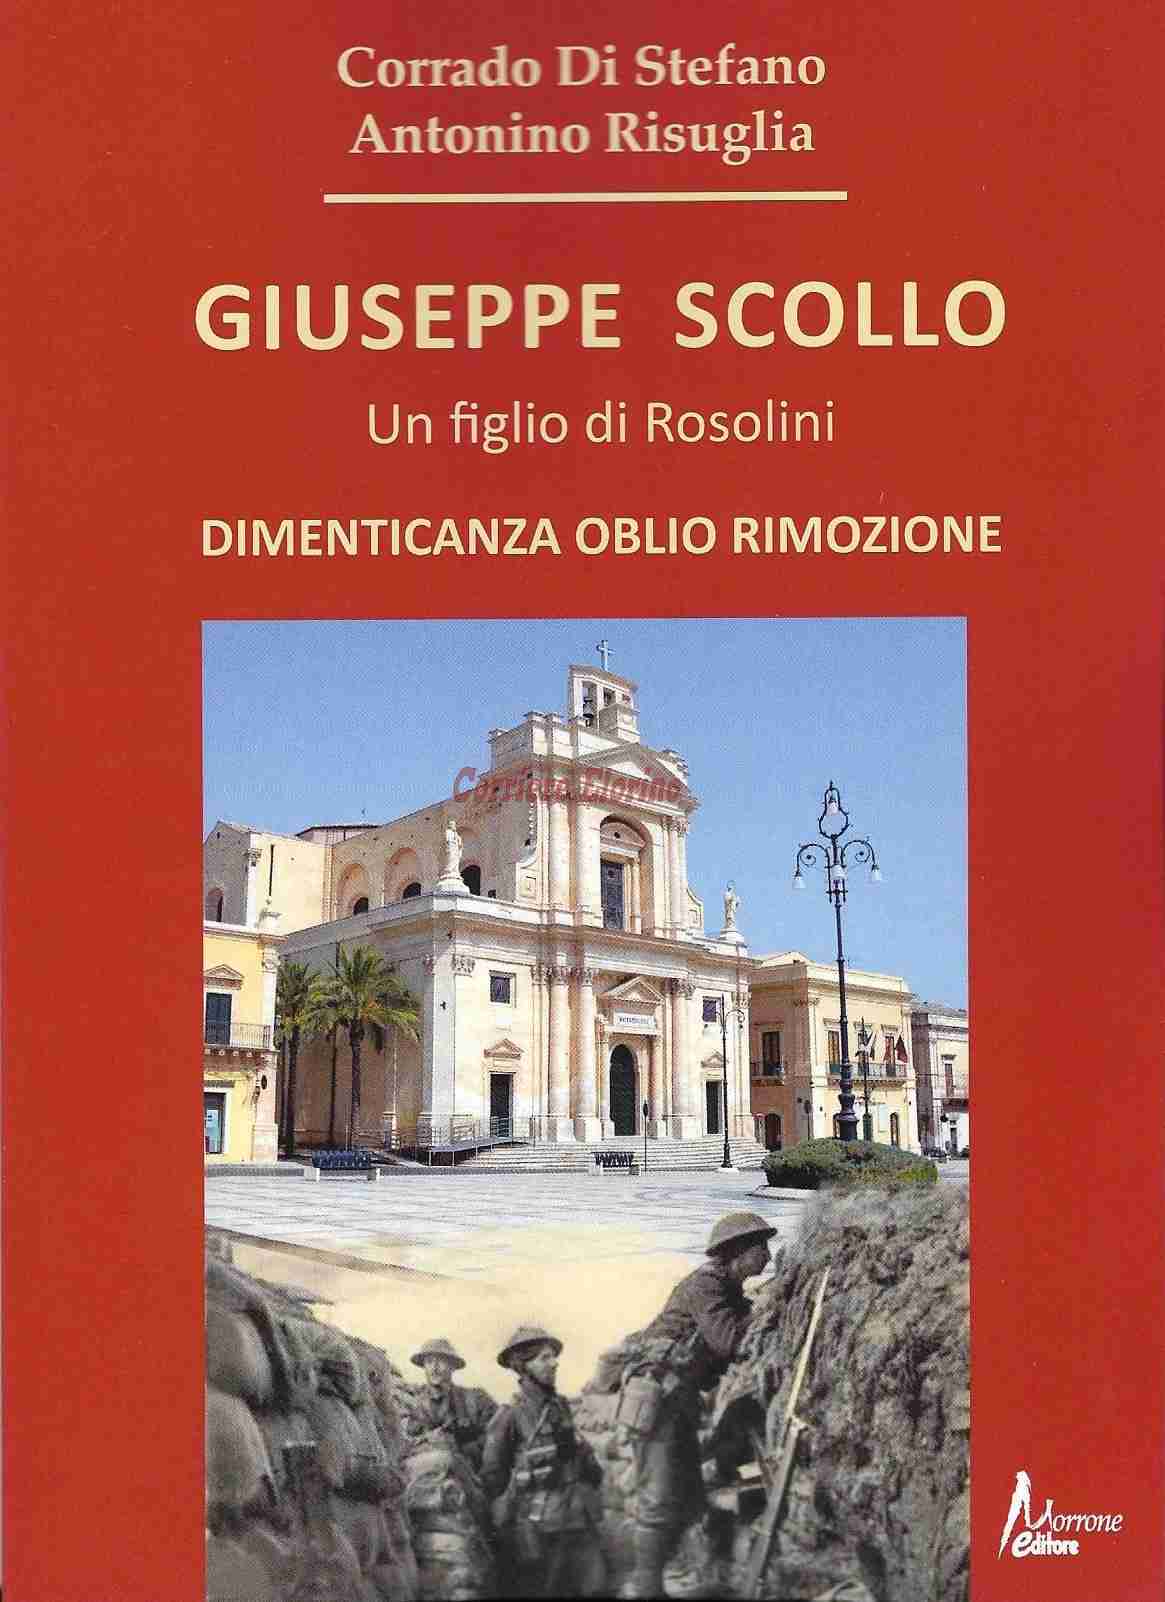 “Un figlio di Rosolini ferito in guerra”, sabato 2 dicembre la presentazione del libro su Giuseppe Scollo